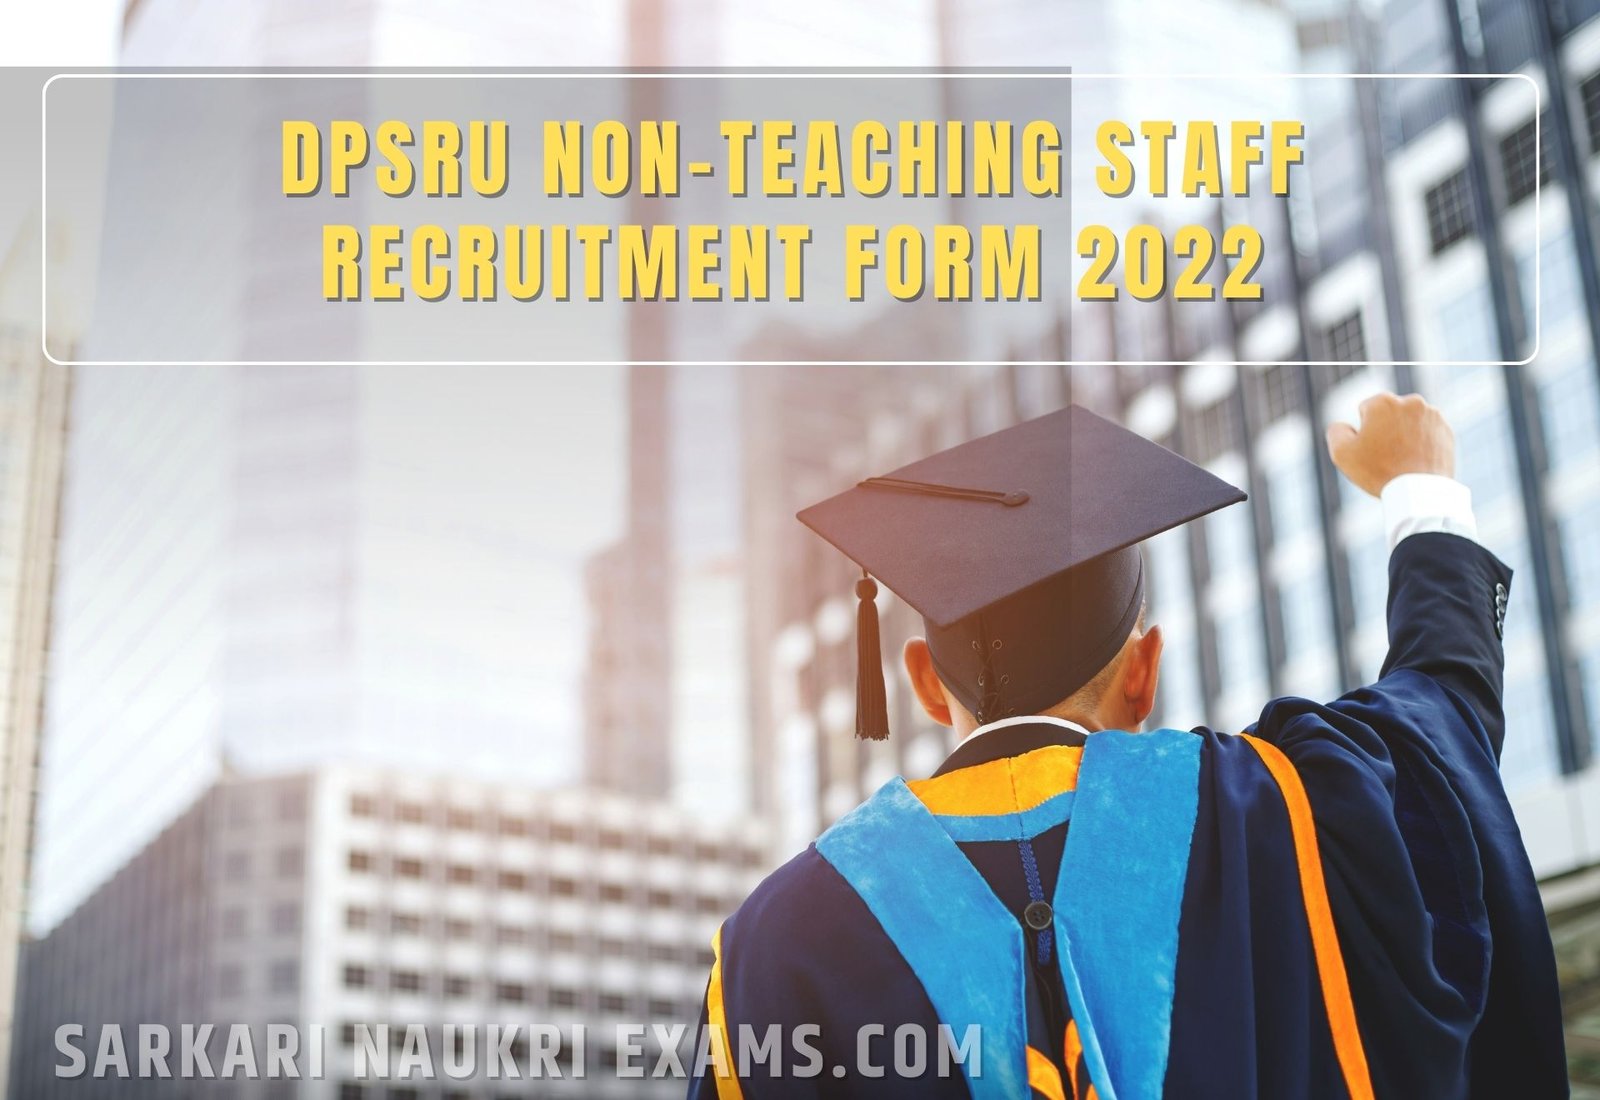 DPSRU Office Assistant Recruitment Form 2022 | 12th Pass Job